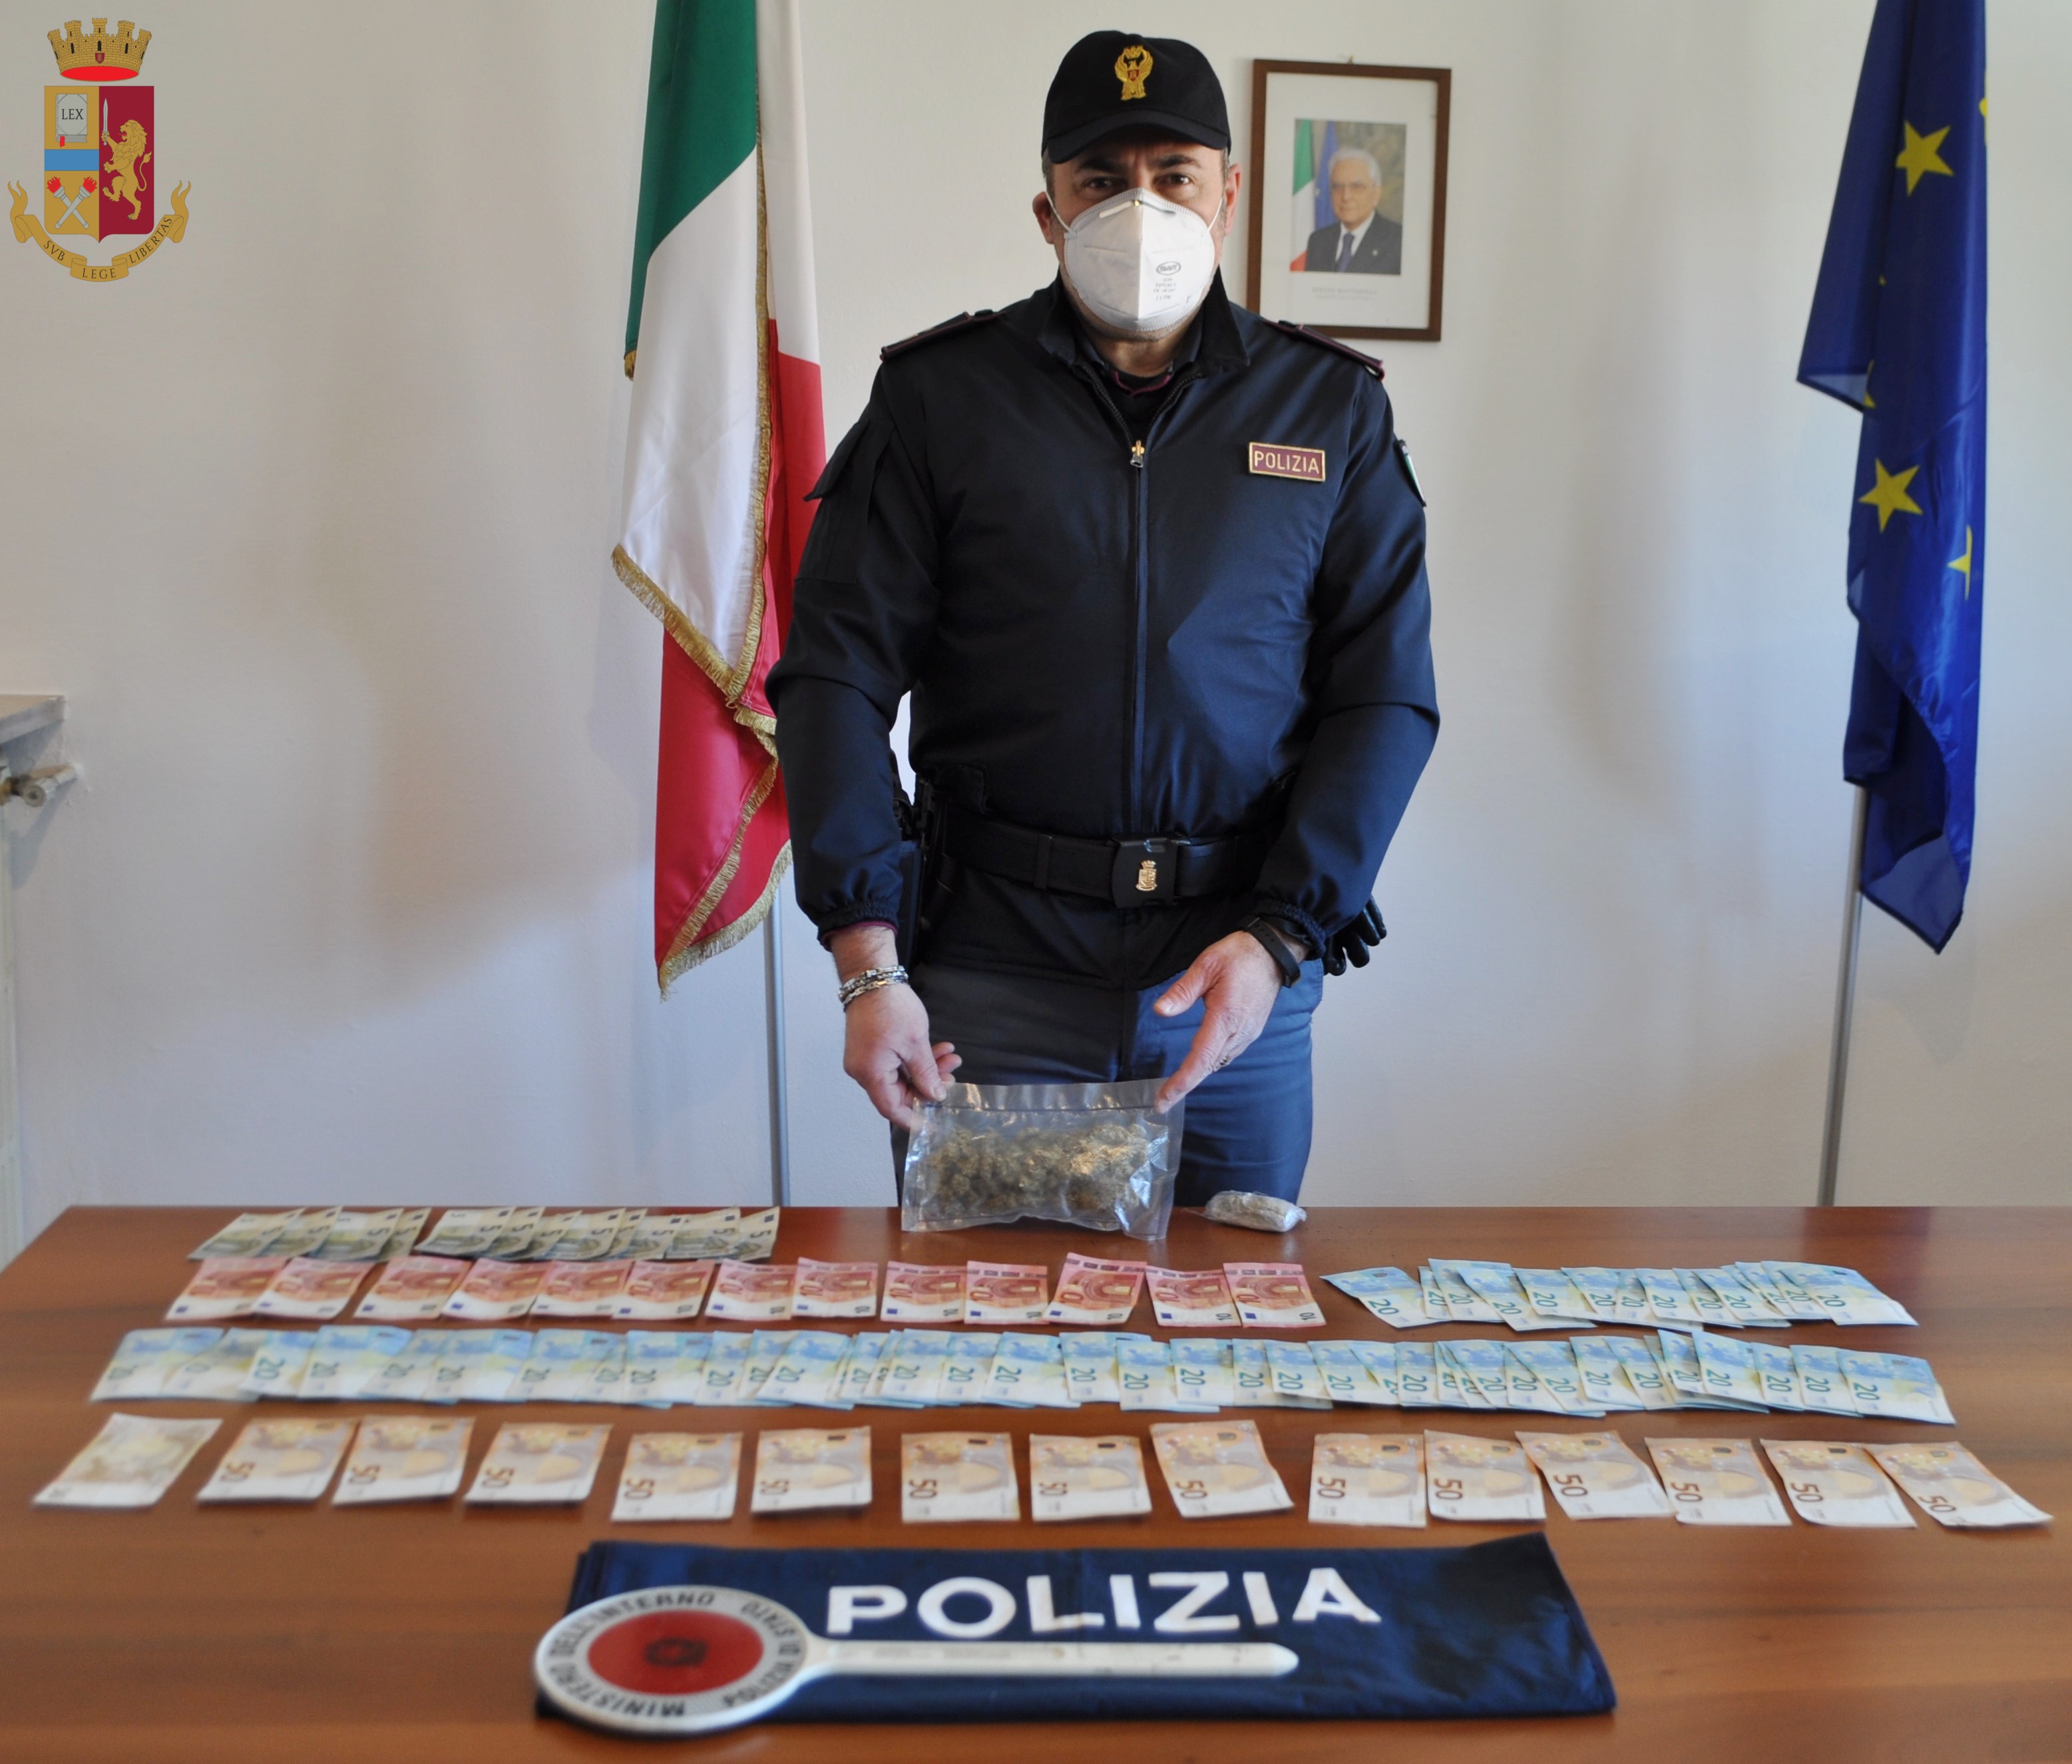 Commissariato di Crema: arrestato un 23enne italiano per spaccio e detenzione di sostanza stupefacente.